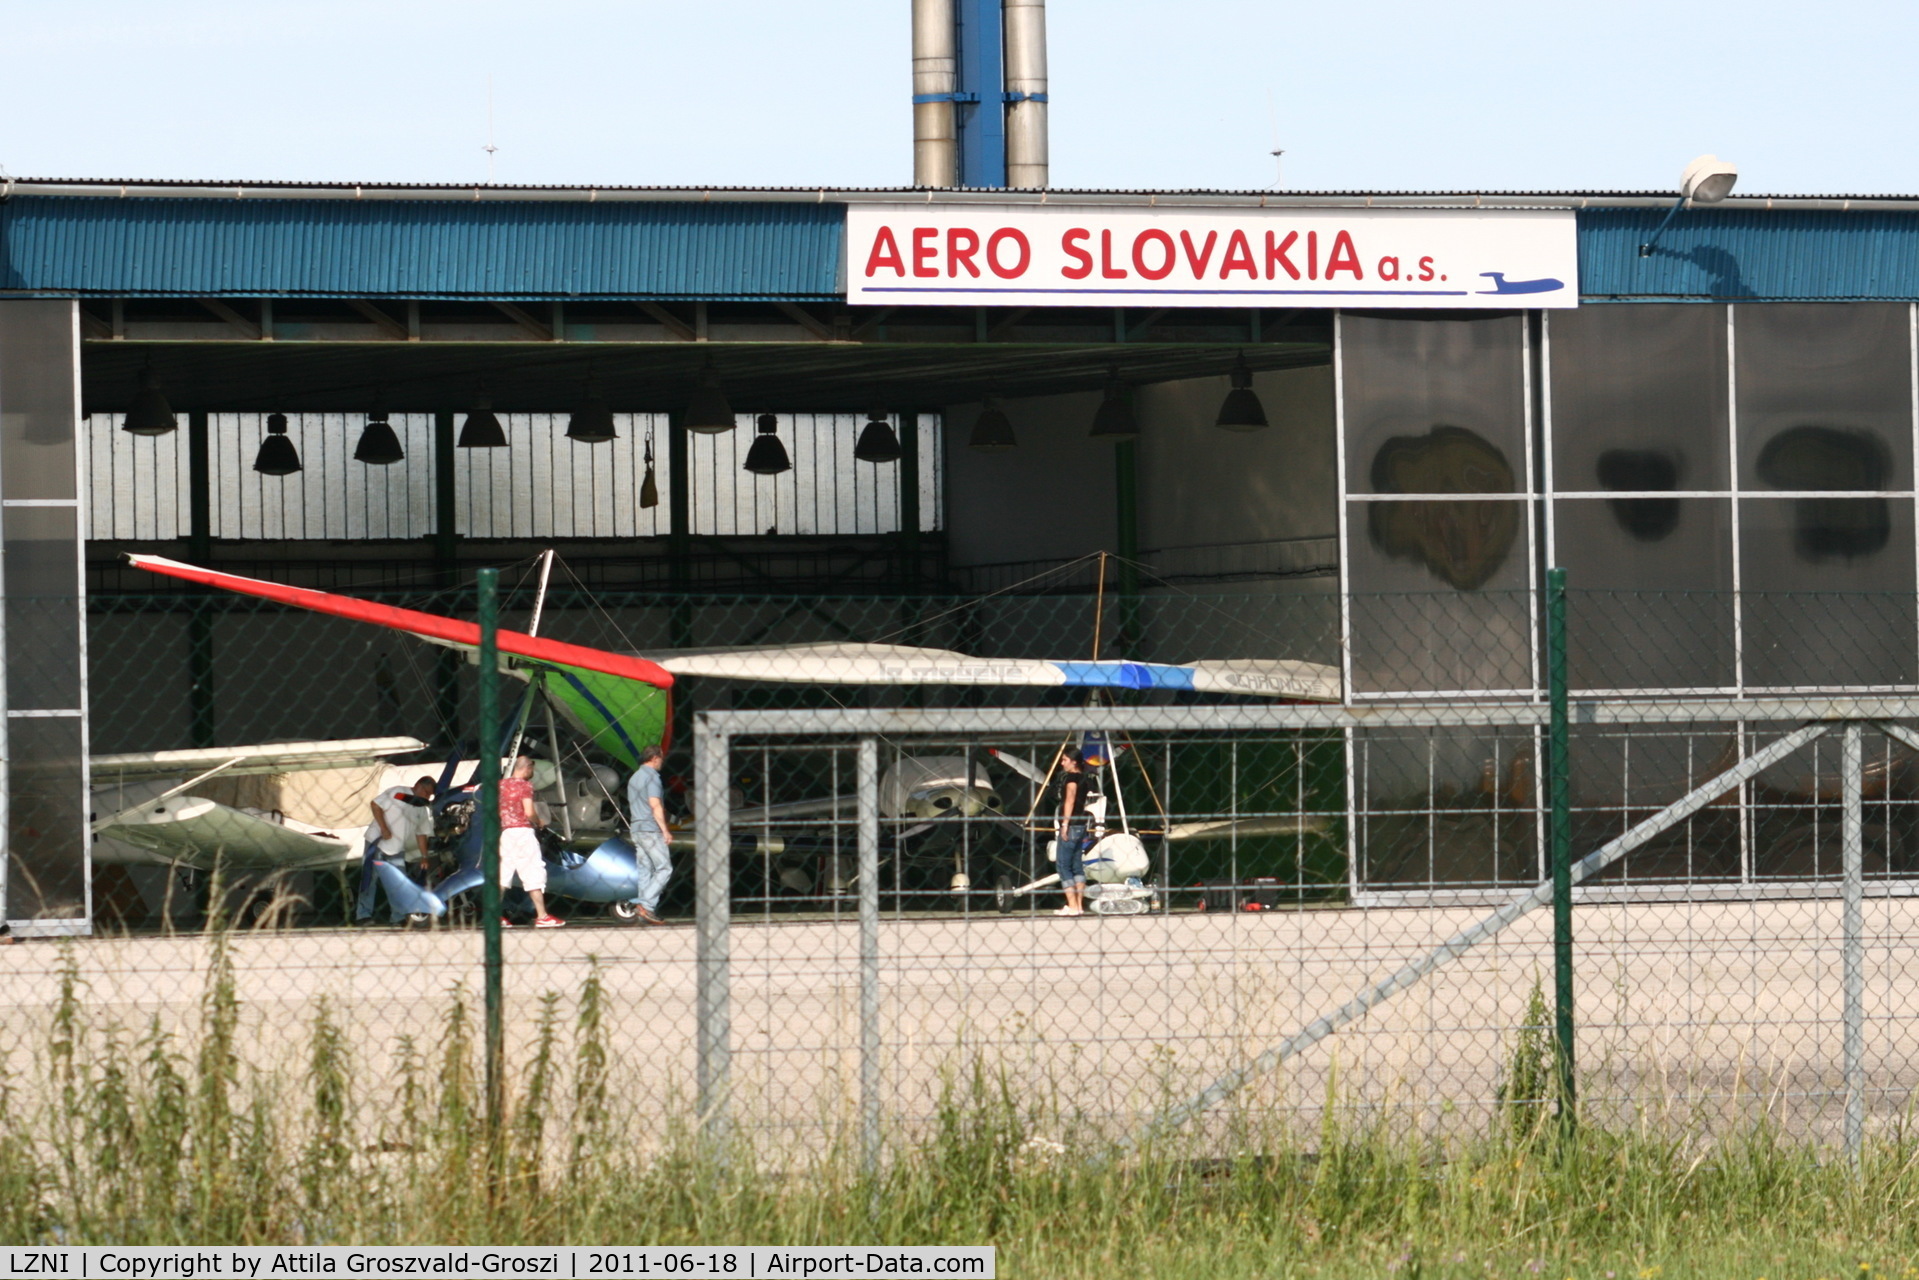 LZNI Airport - Nitra Janikovce Airport - Slovakia (Slovak Republik) SK - Aero Slovakia a.s. hangar